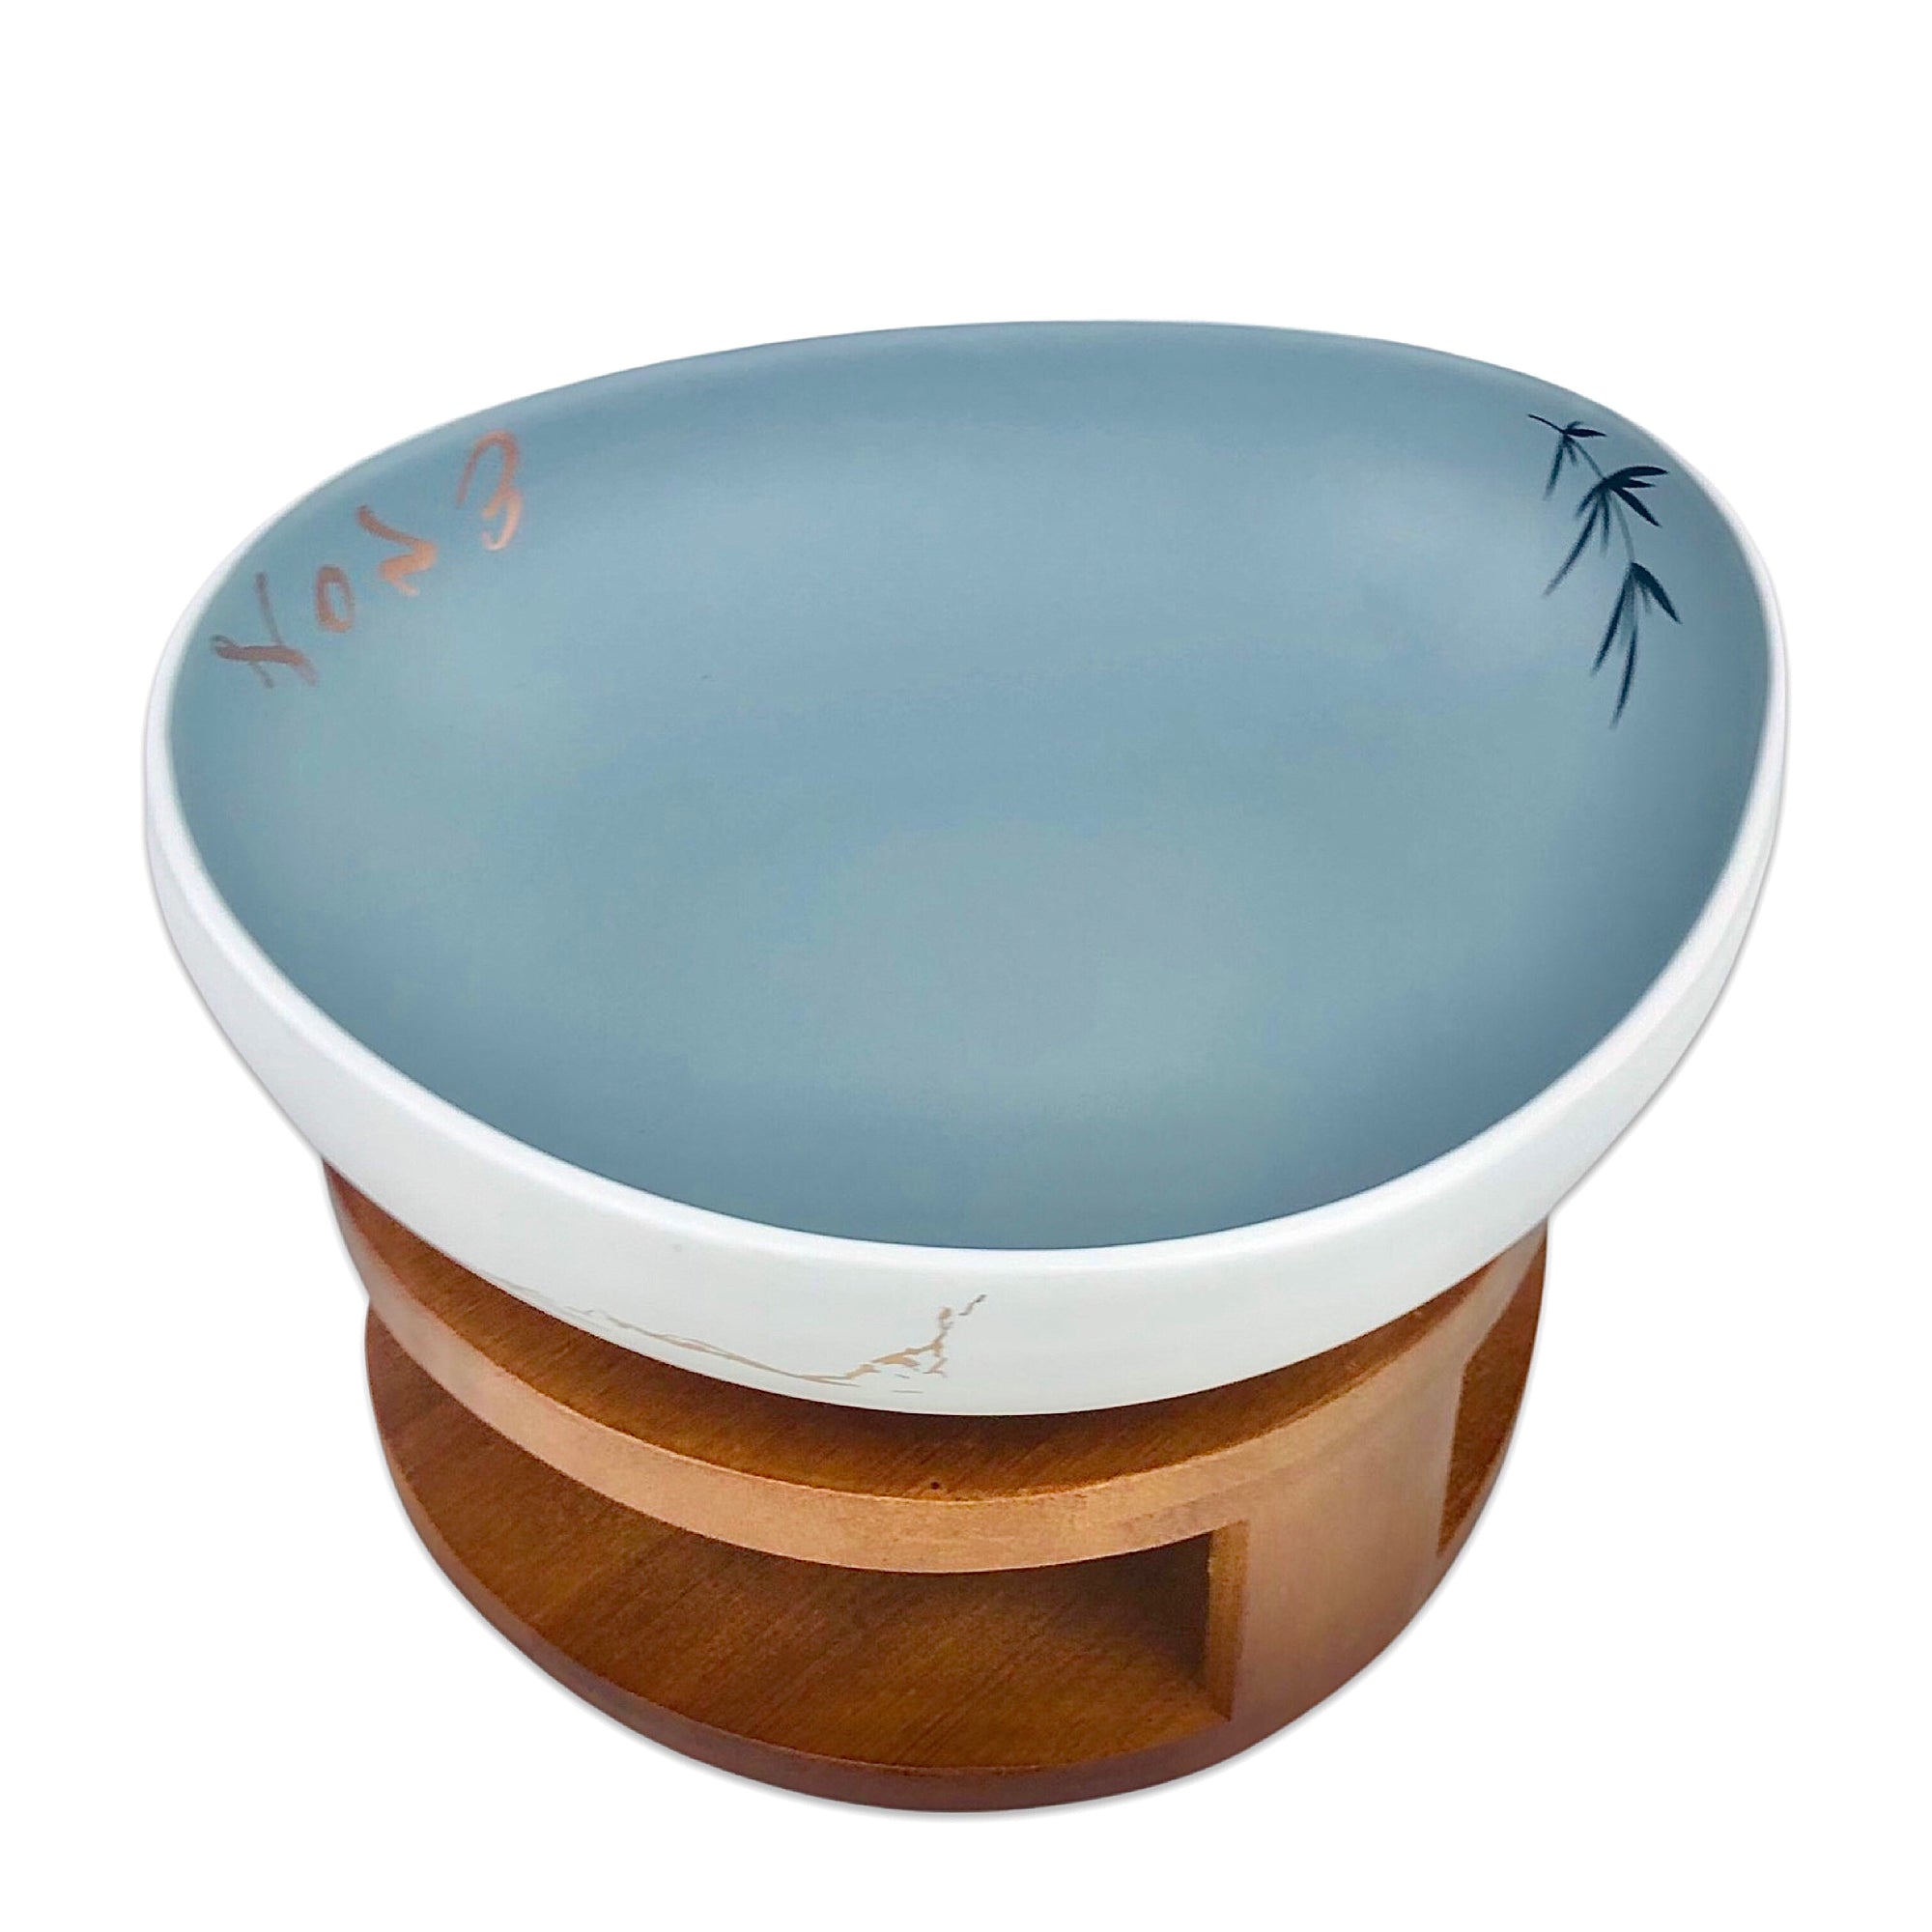 Oval Platter Serving Bowl